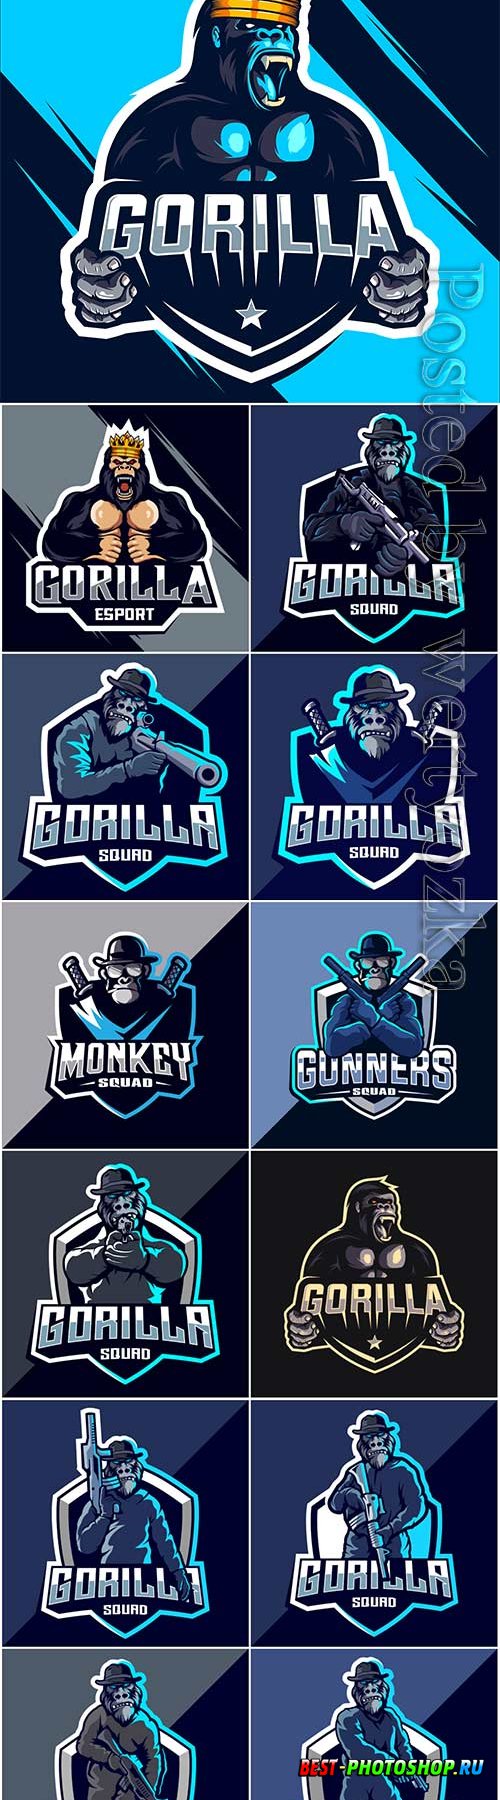 Gorilla squad esport logo design premium vector